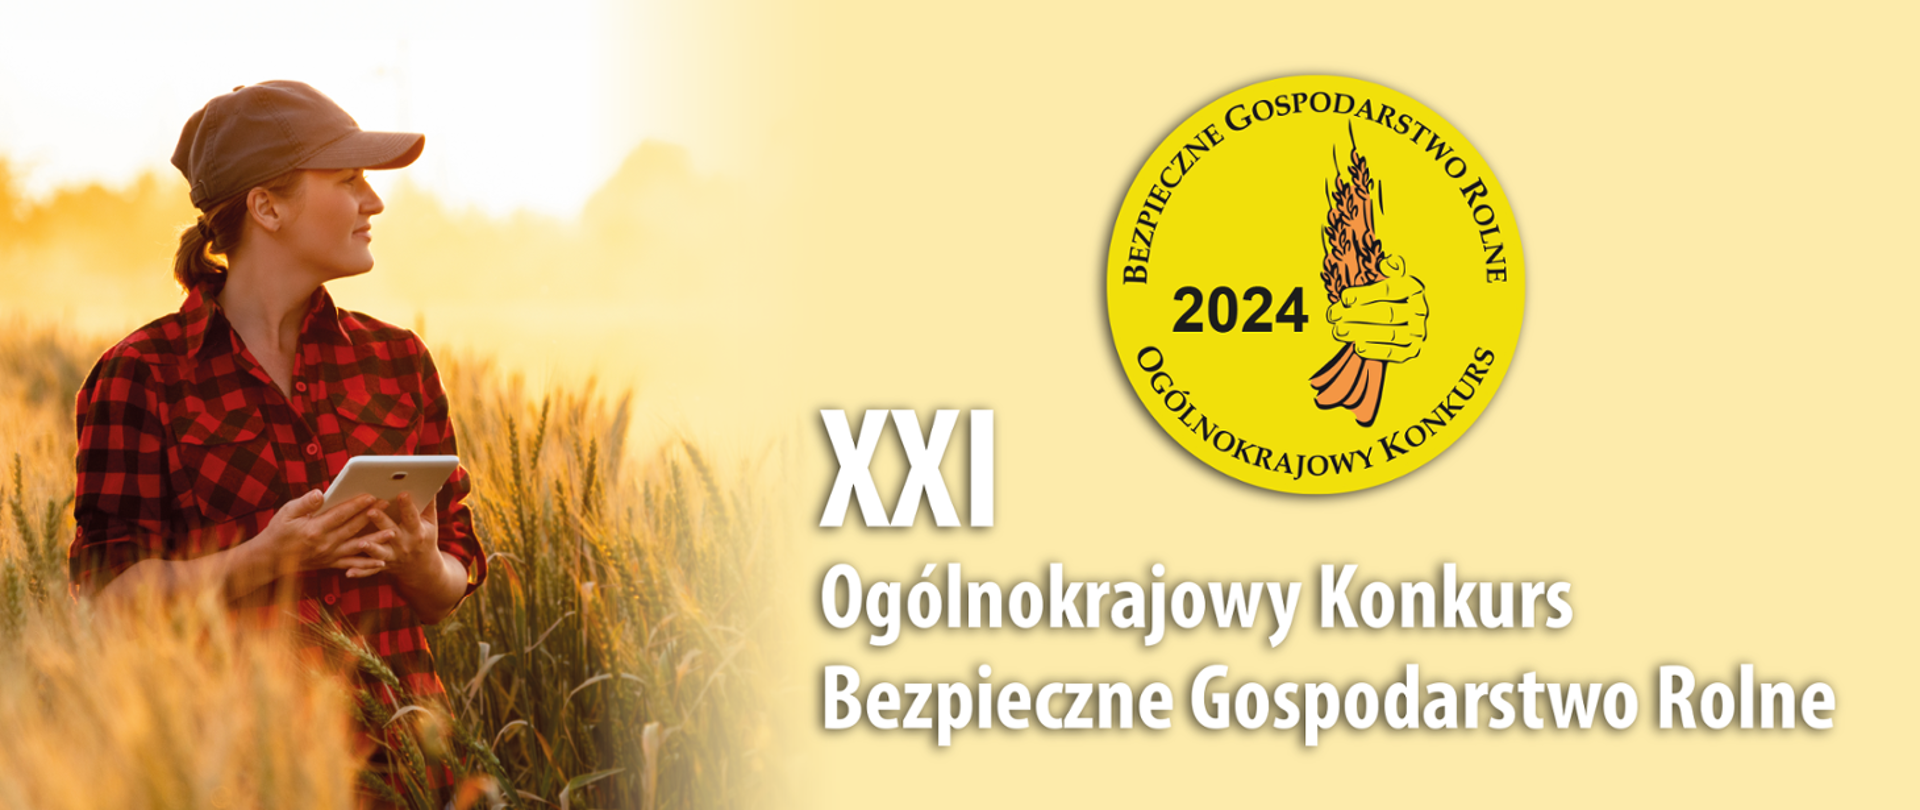 
XXI Ogólnokrajowy Konkurs Bezpieczne Gospodarstwo Rolne